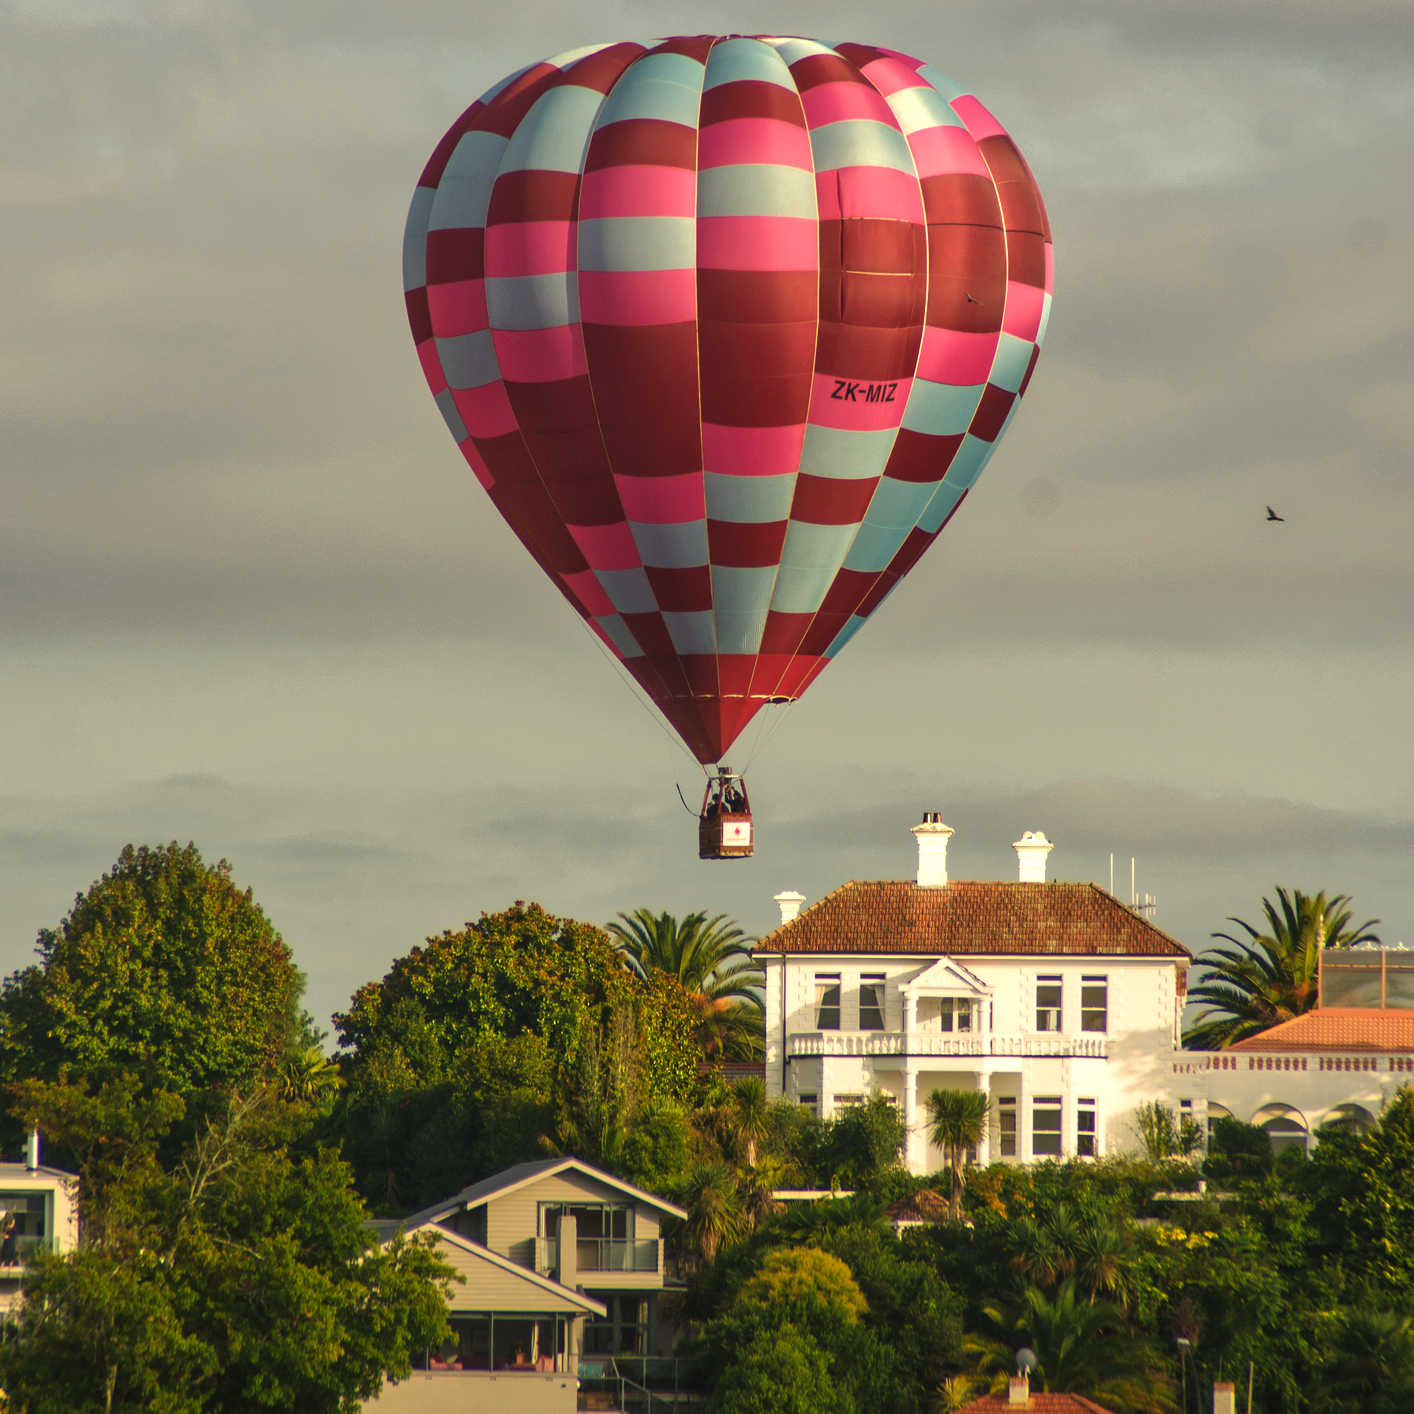 Hamilton hot air balloons, New Zealand